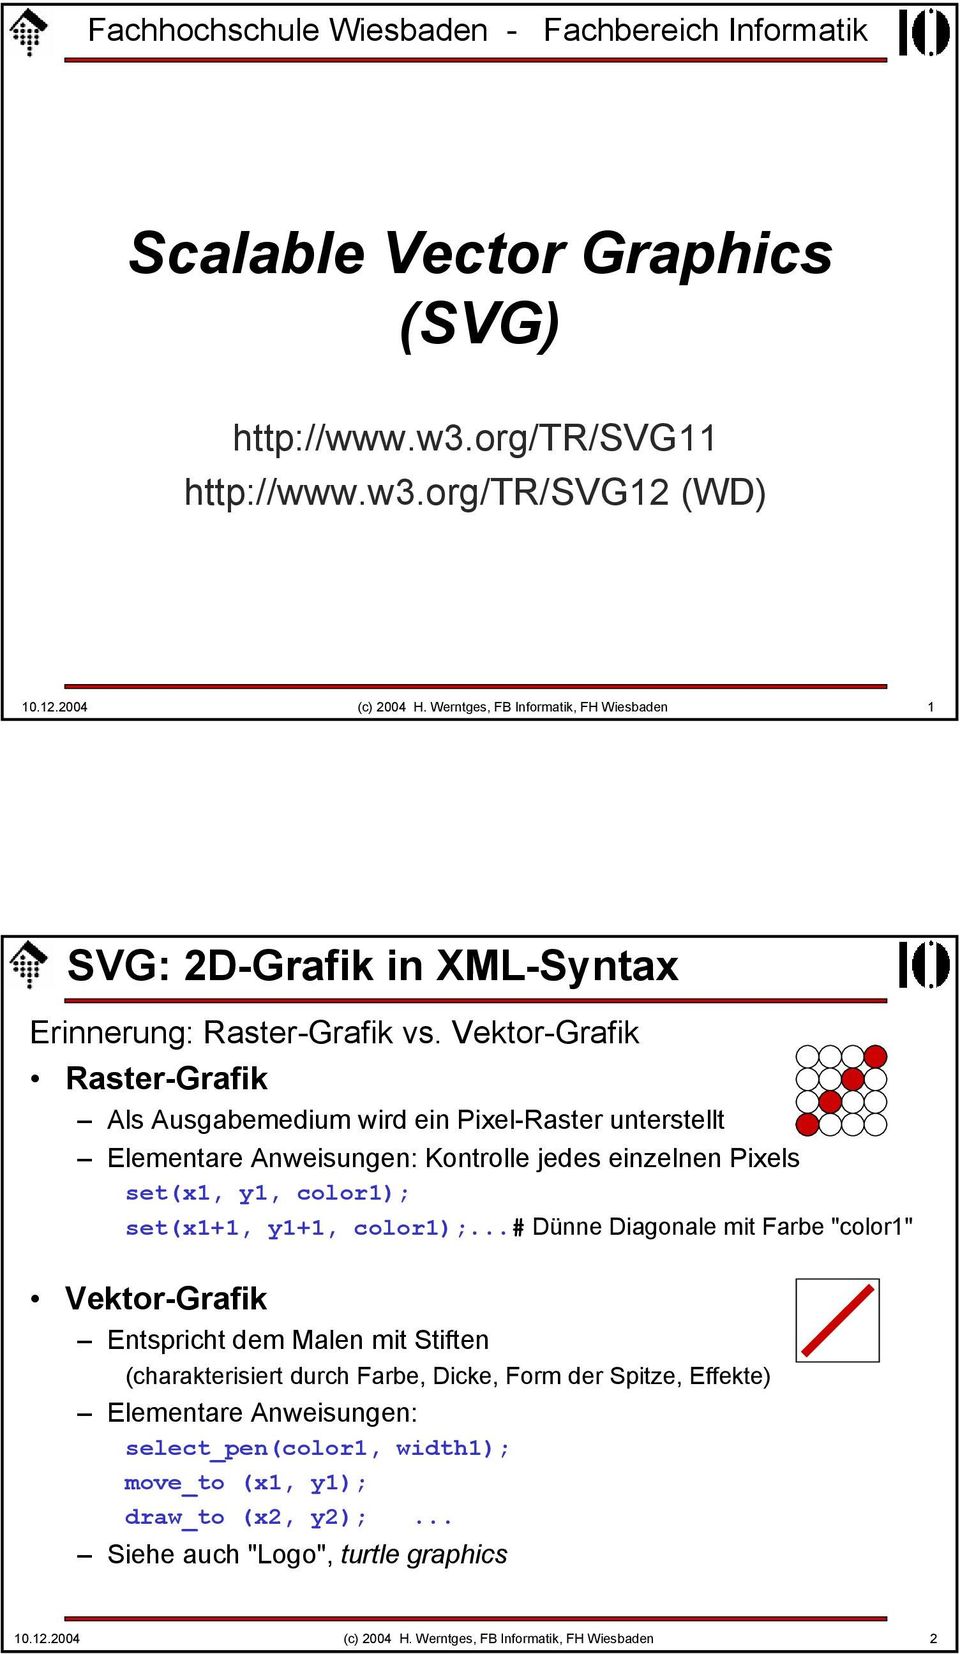 Vektor-Grafik Raster-Grafik Als Ausgabemedium wird ein Pixel-Raster unterstellt Elementare Anweisungen: Kontrolle jedes einzelnen Pixels set(x1, y1, color1); set(x1+1, y1+1, color1);.